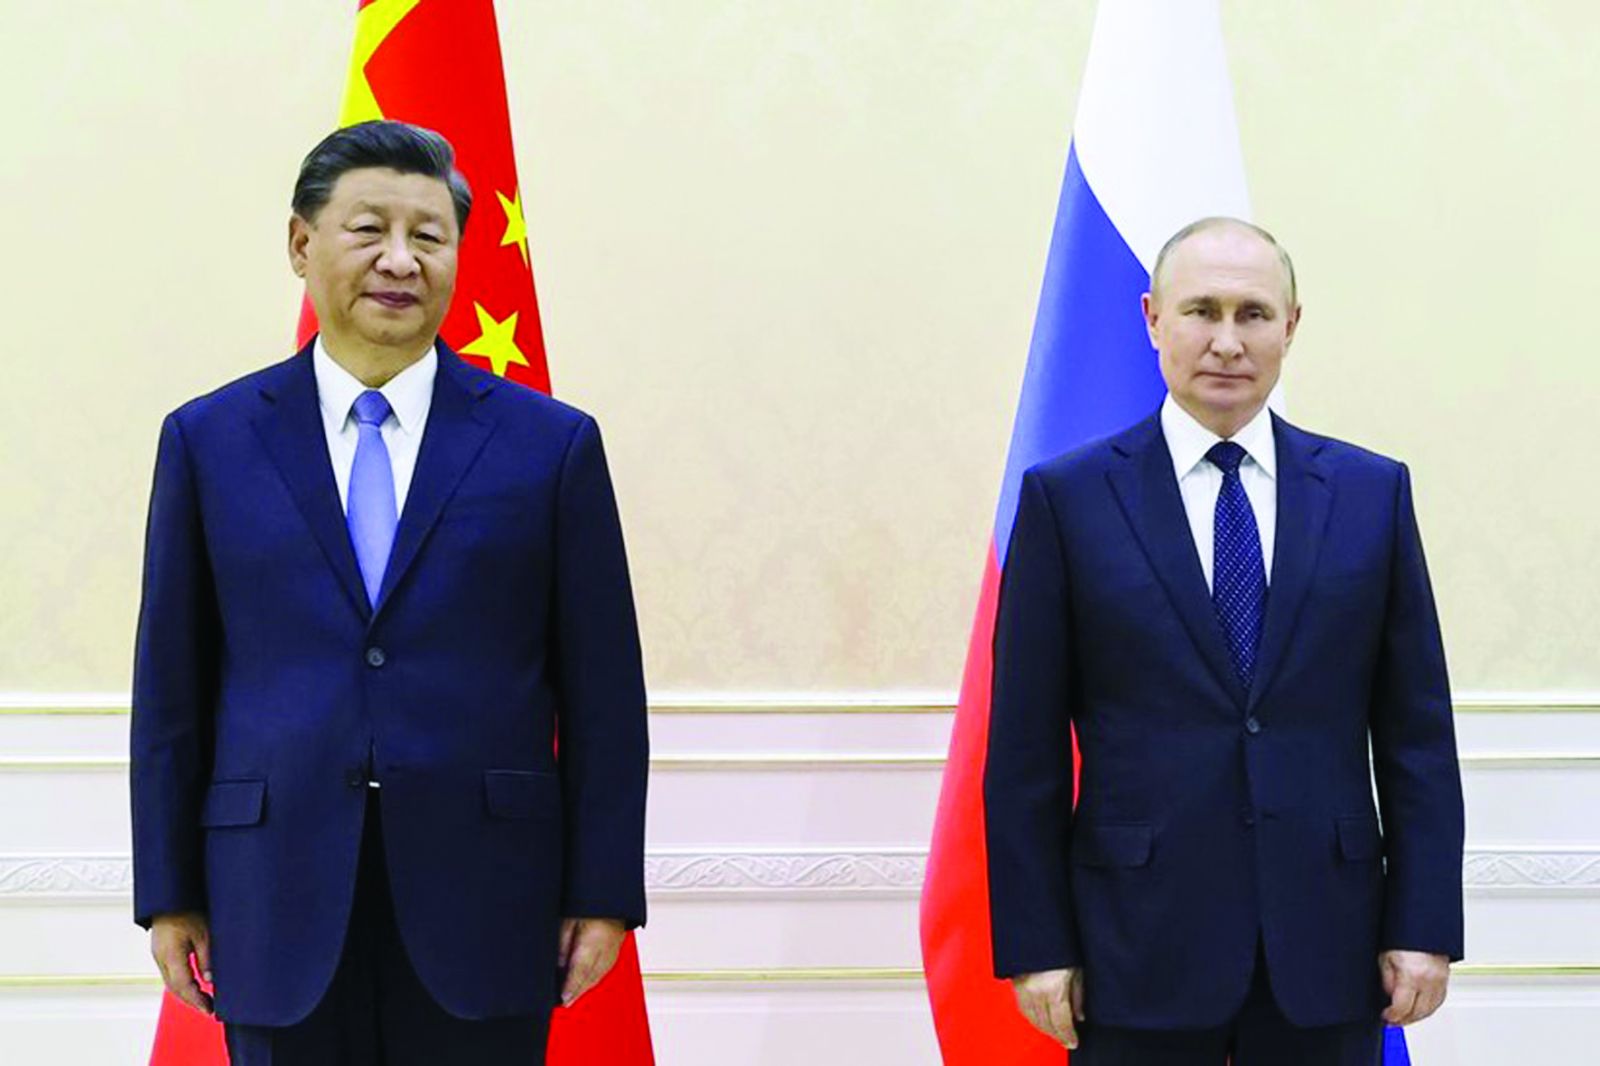  Tổng thống Nga Vladimir Putin và Chủ tịch Trung Quốc Tập Cận Bình tại cuộc gặp bên lề hội nghị thượng đỉnh của Tổ chức Hợp tác Thượng Hải ở thành phố Samarkand, Uzbekistan ngày 15.9. Ảnh: AP